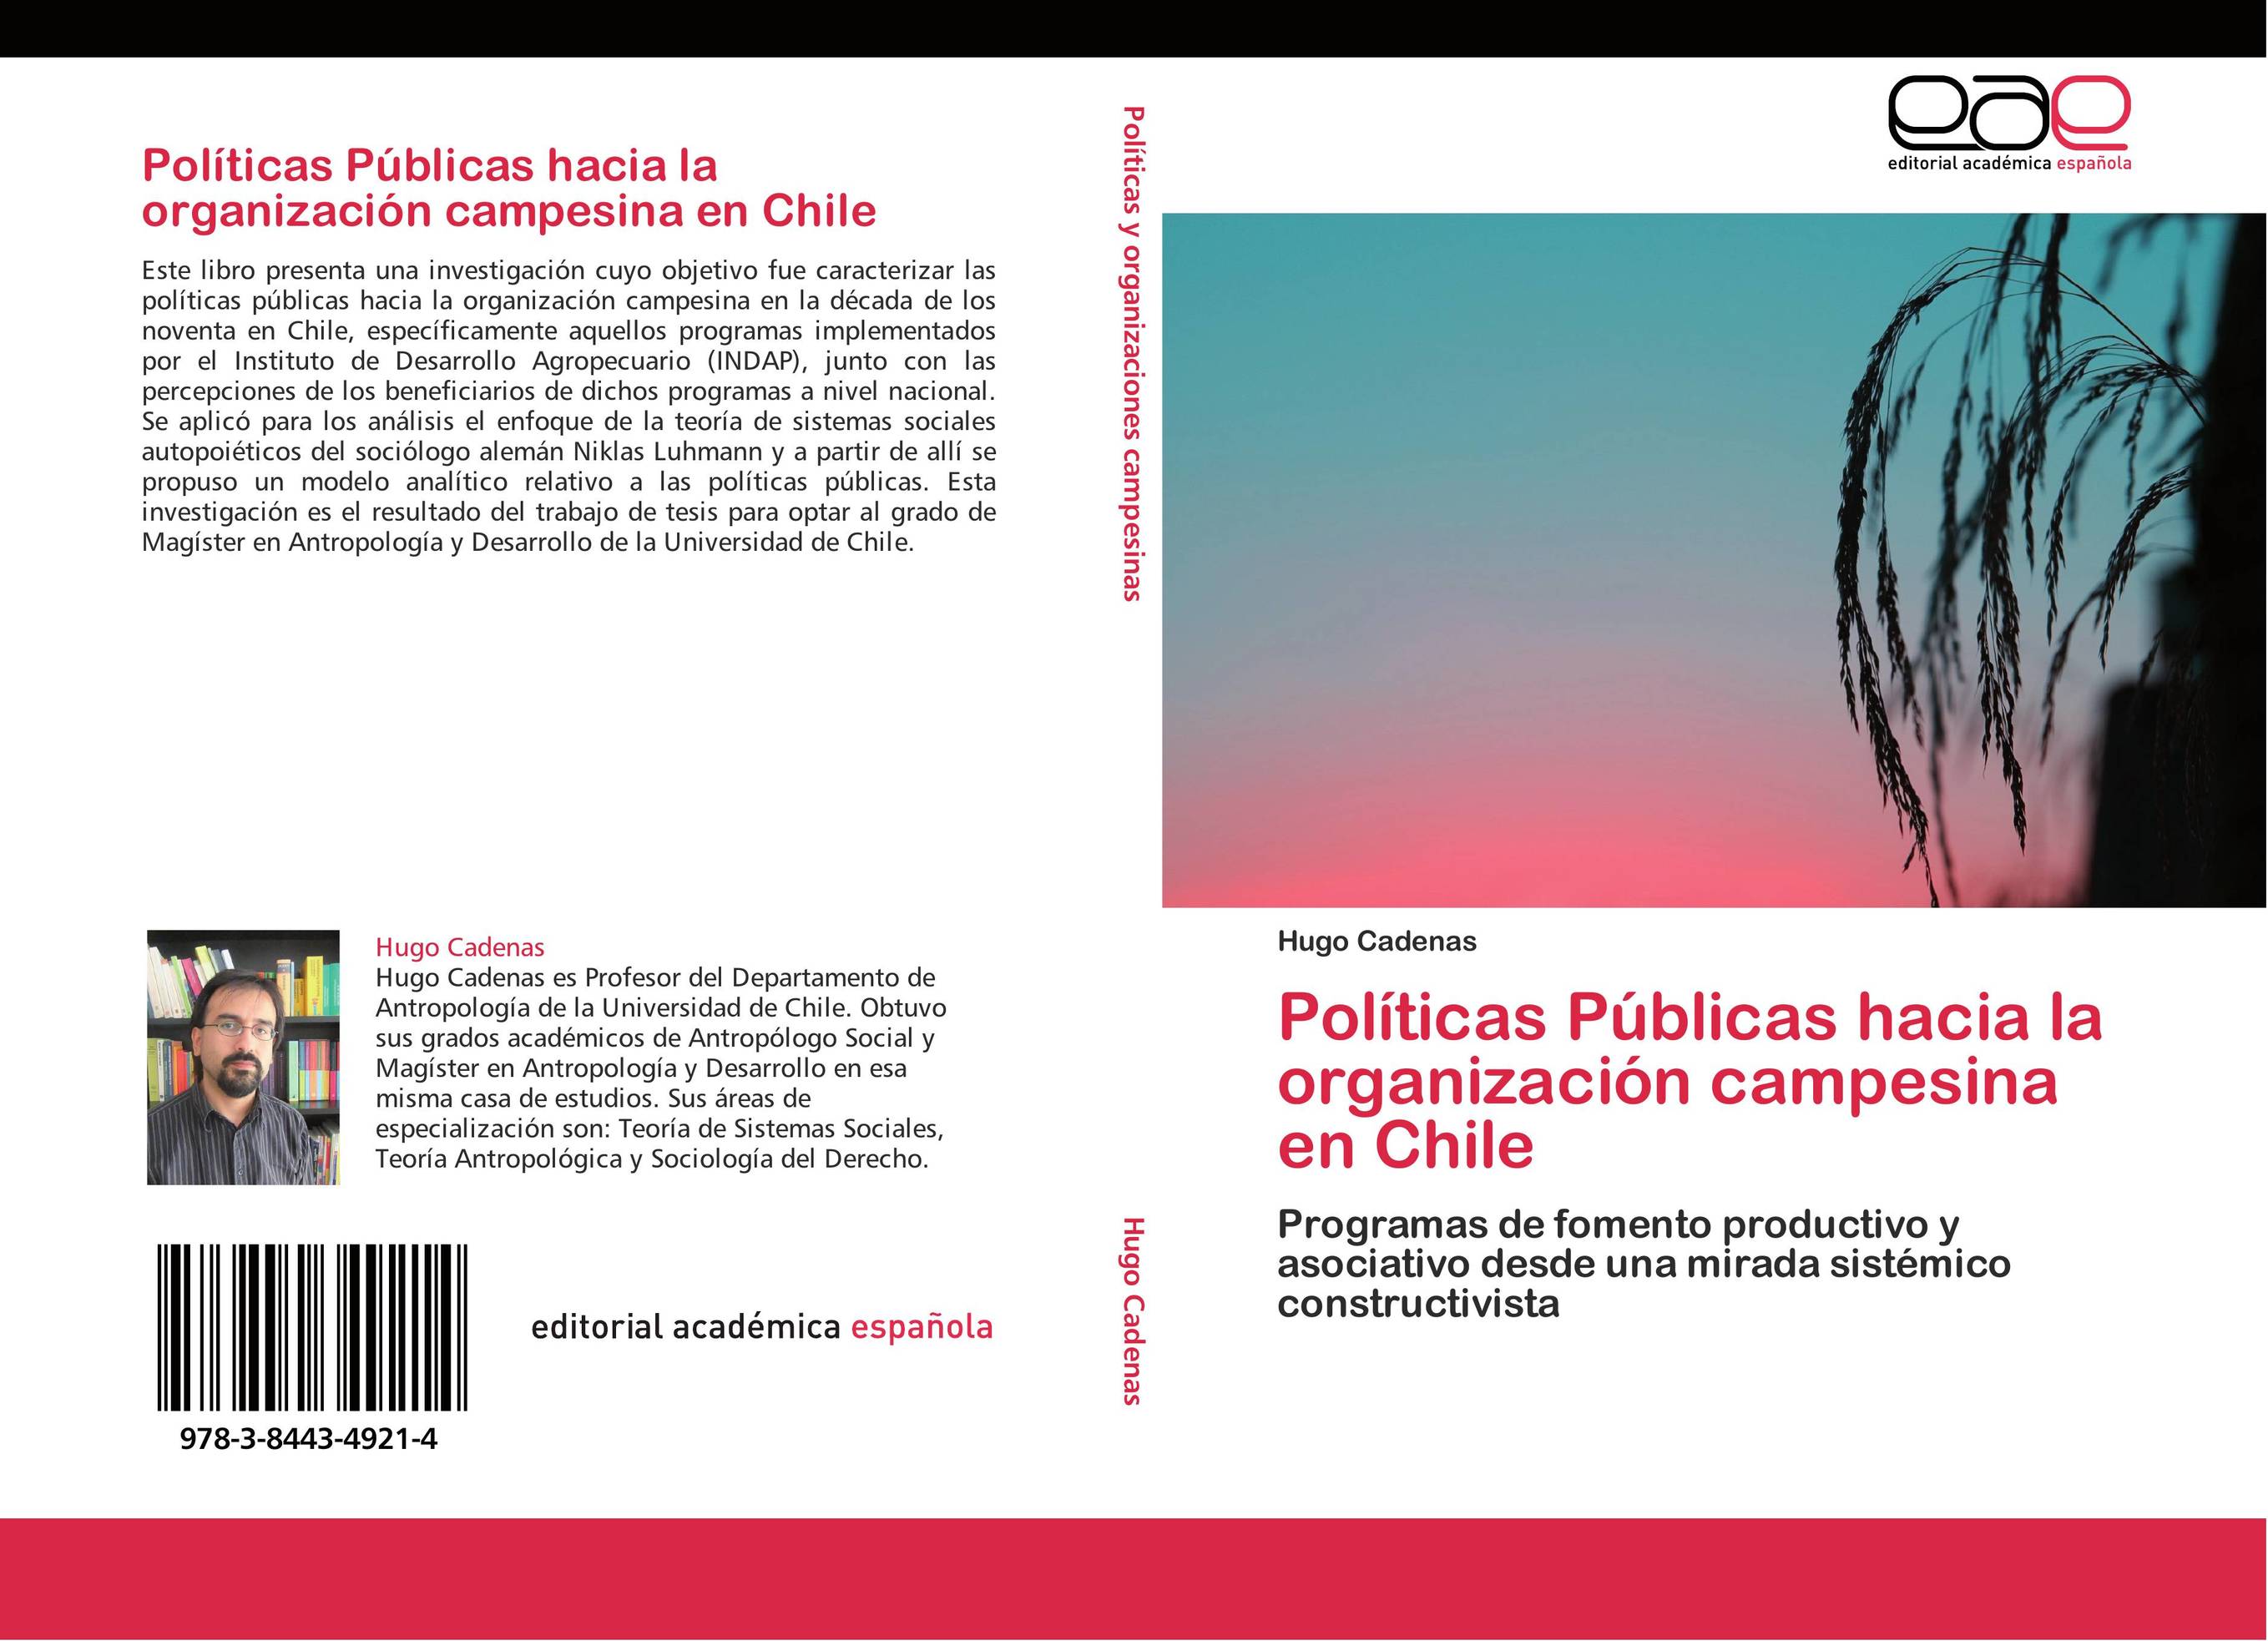 Políticas Públicas hacia la organización campesina en Chile